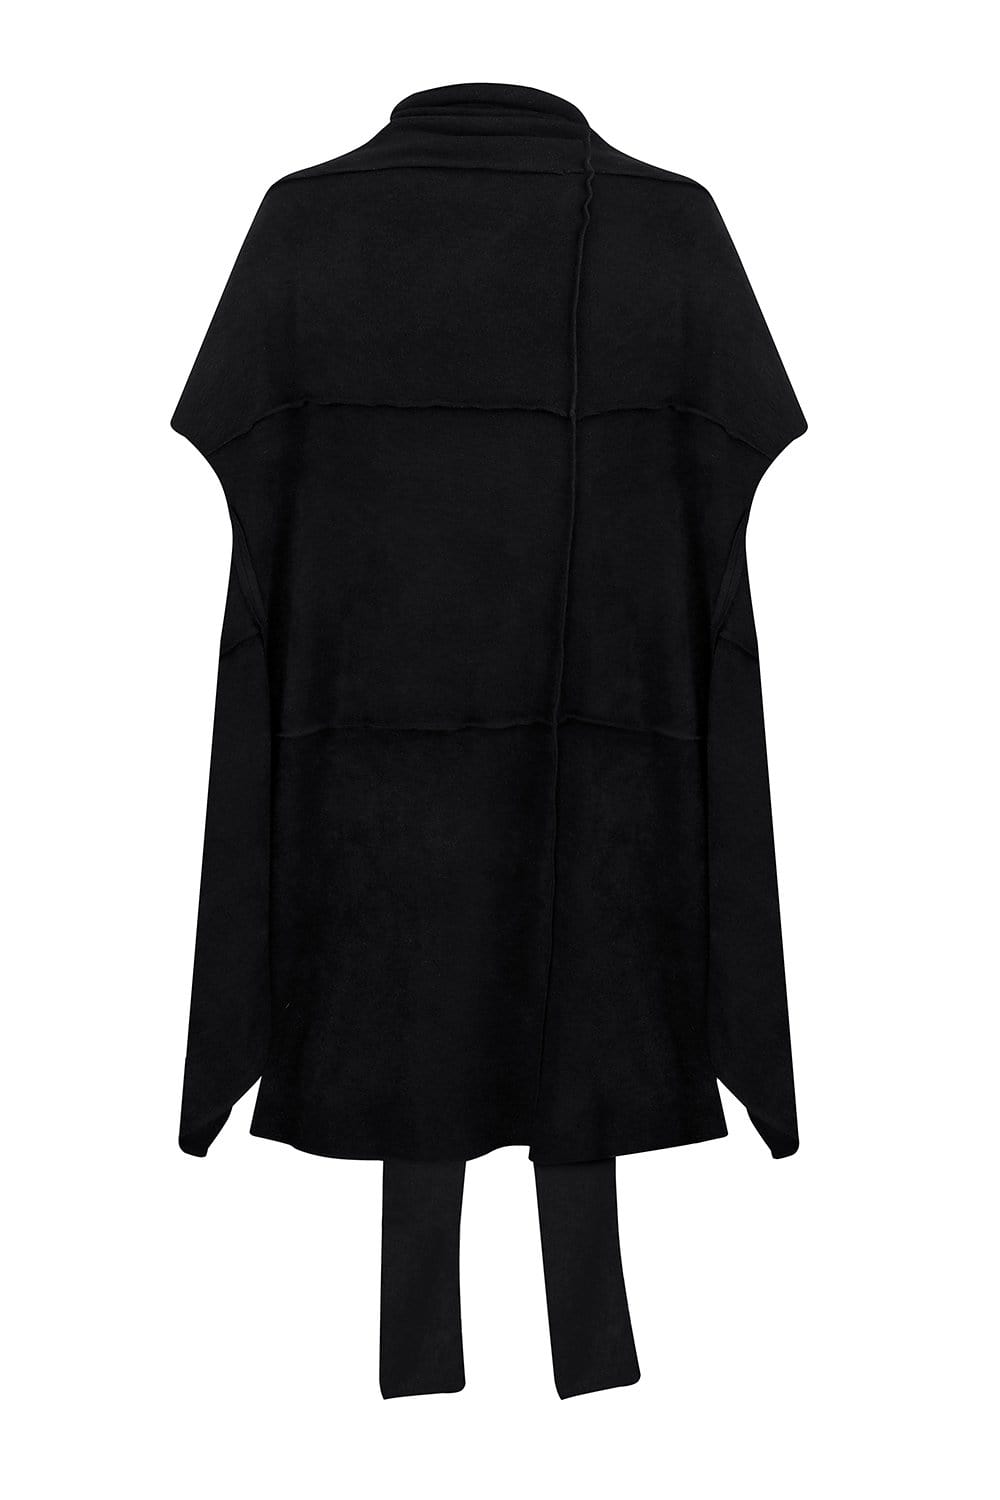 Black sleeveless coat – MDNT45 | mdnt45.com